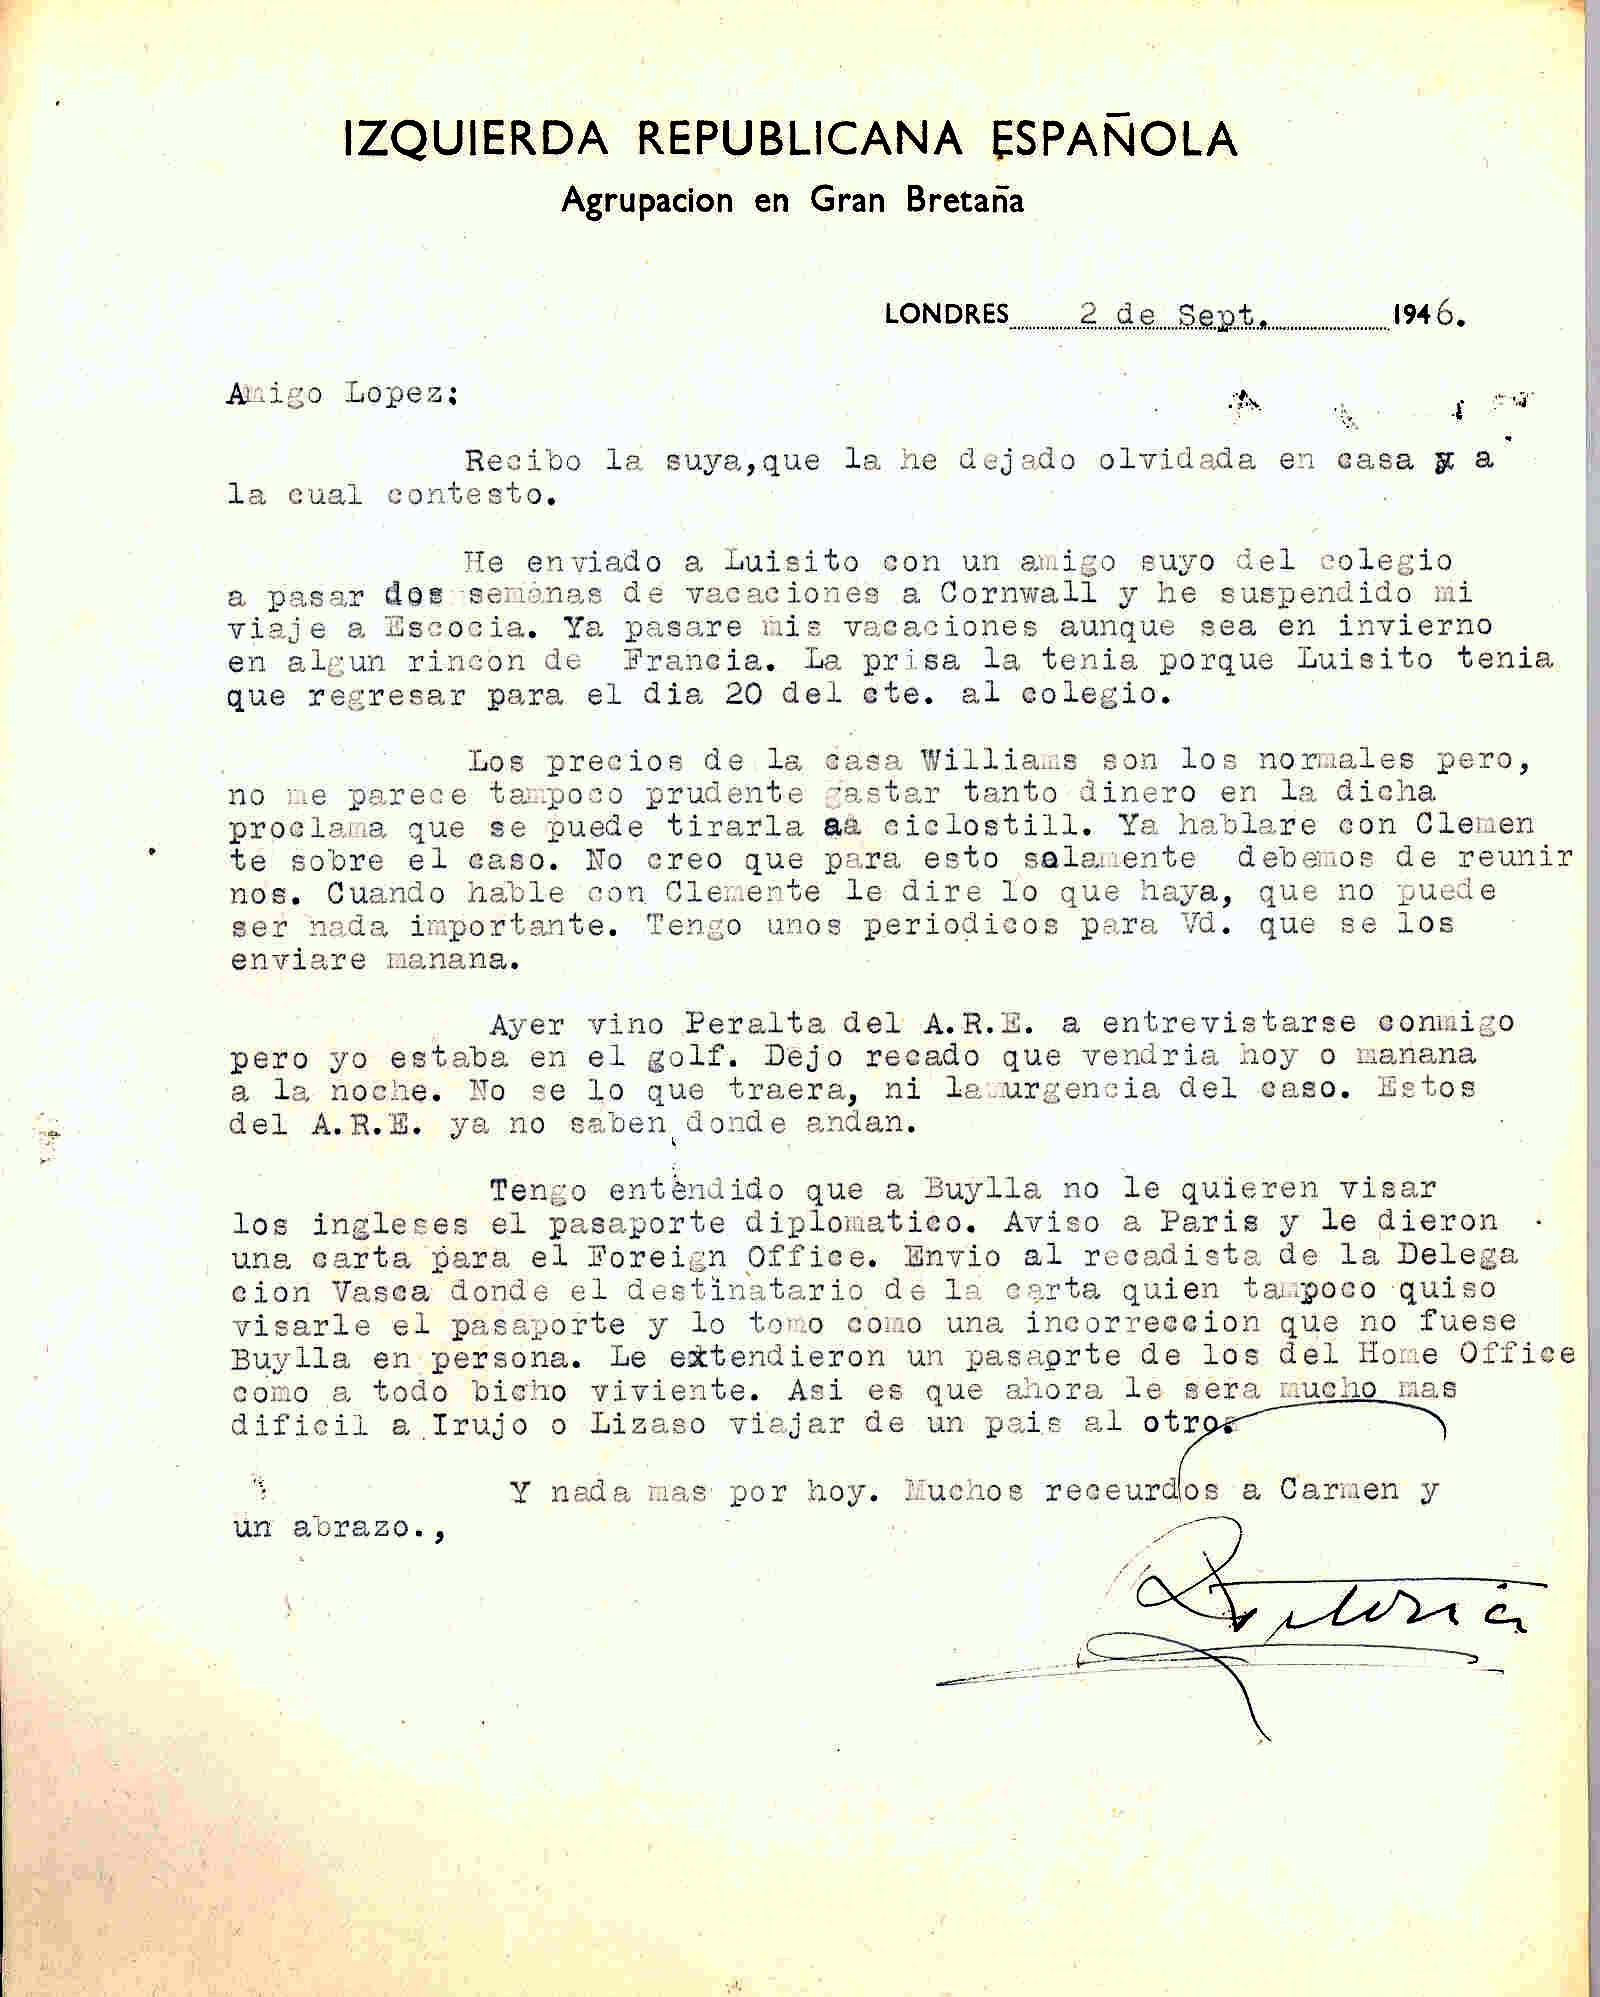 Carta de Roque Victoria en la que habla de la suspensión de su viaje a Escocia; del presupuesto de la casa Williams y de una futura entrevista con Peralta de la ARE.